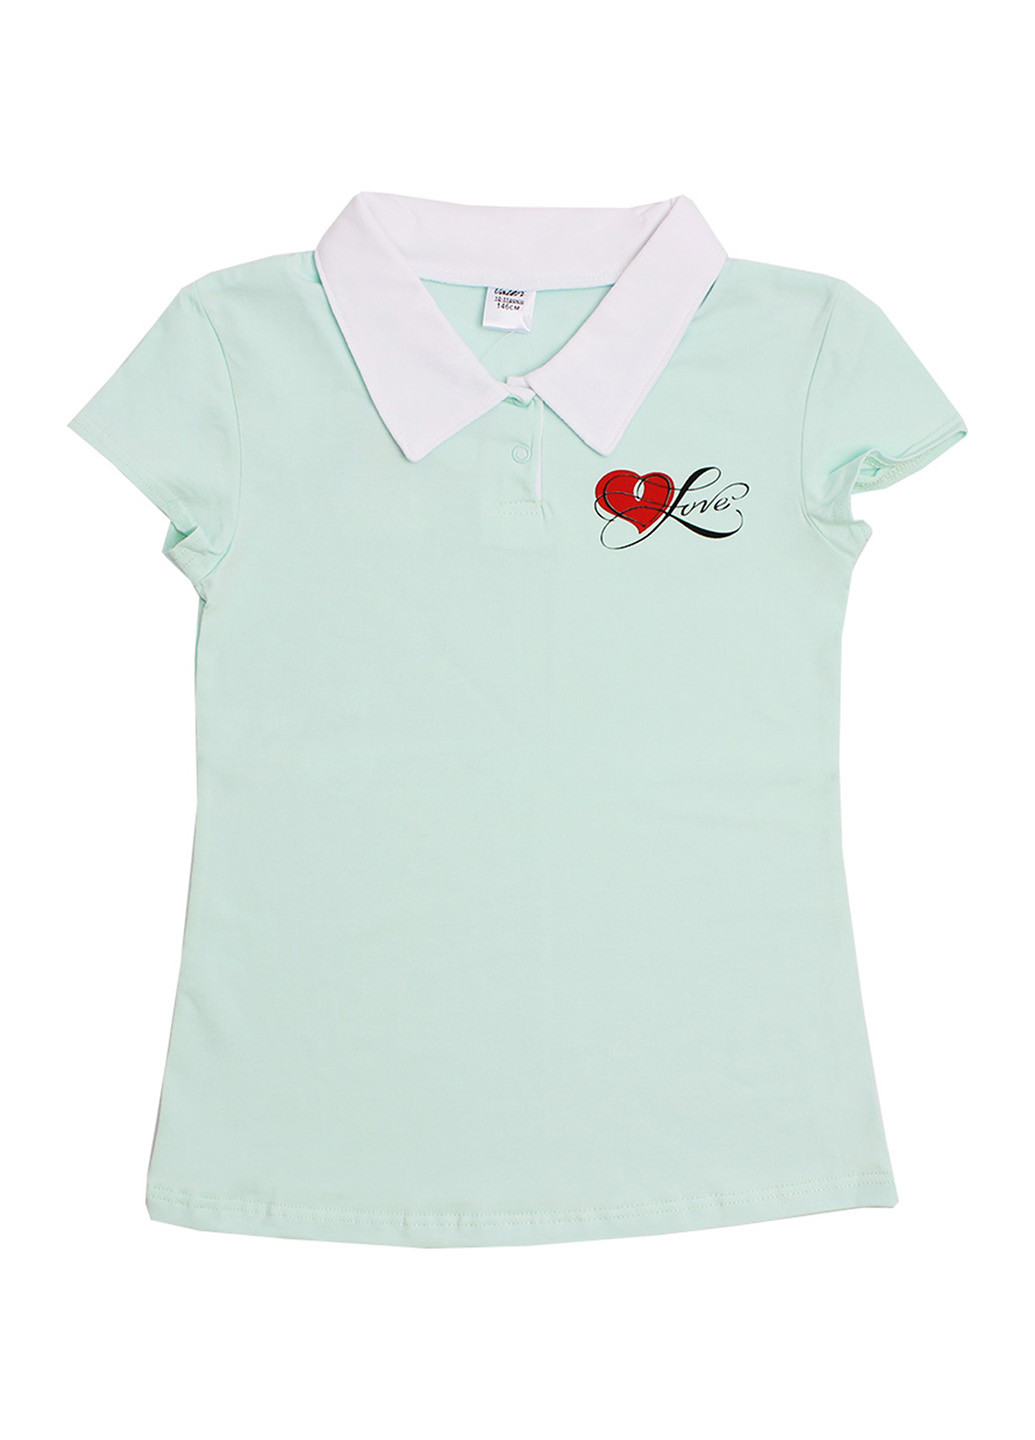 Мятная детская футболка-поло для девочки Валери-Текс с рисунком